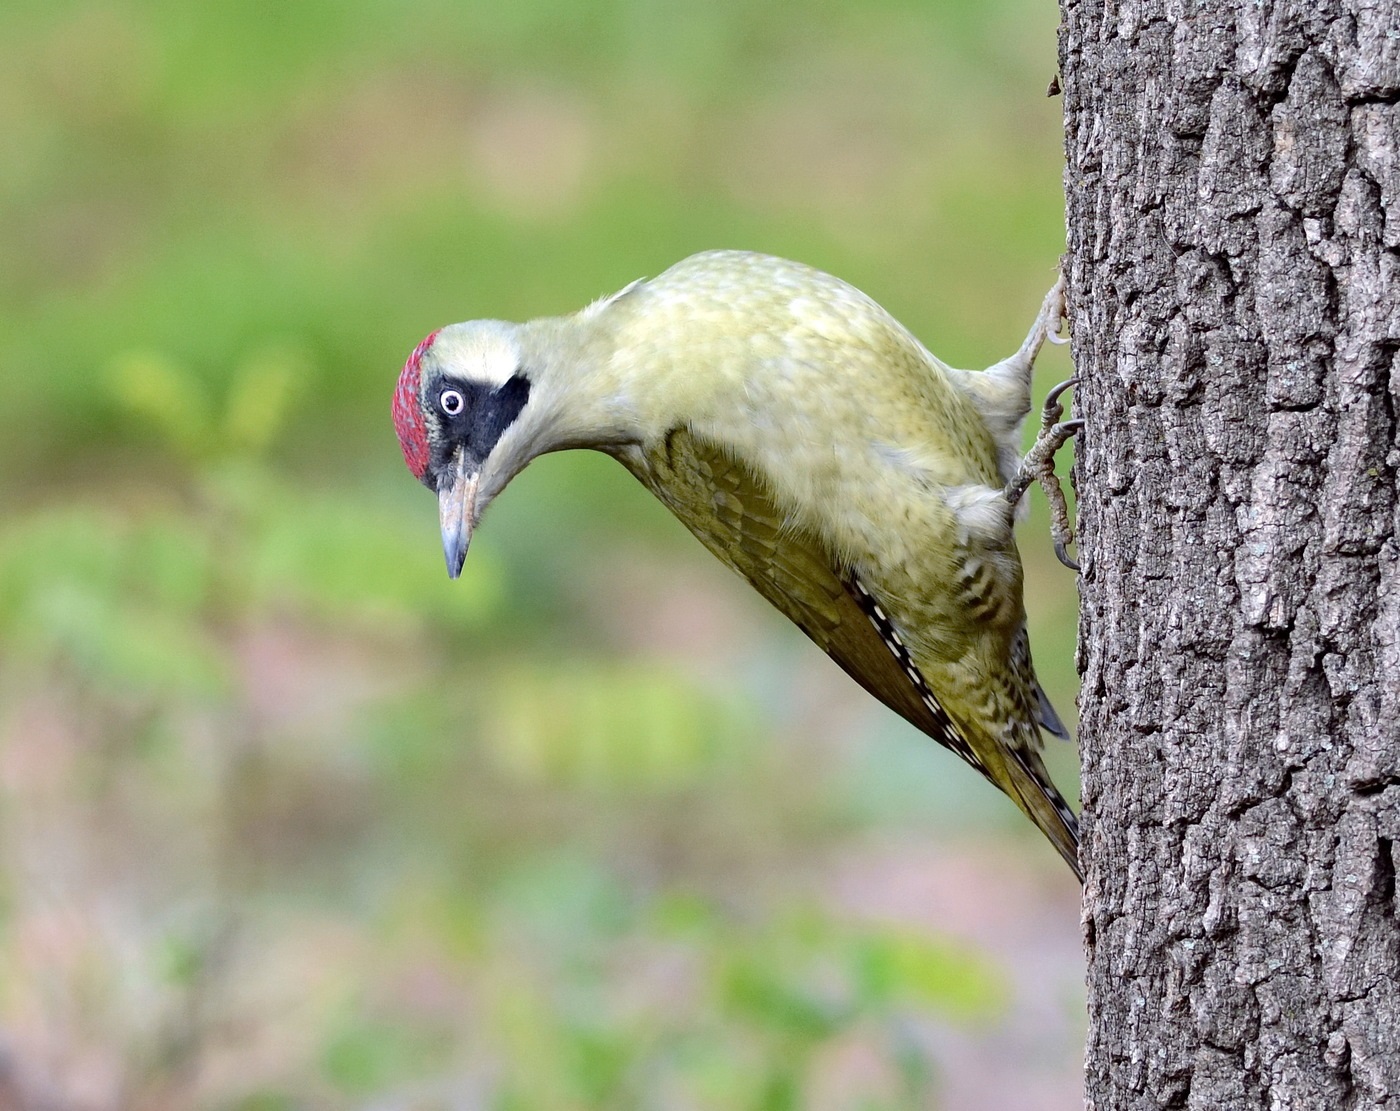 Female green woodpecker